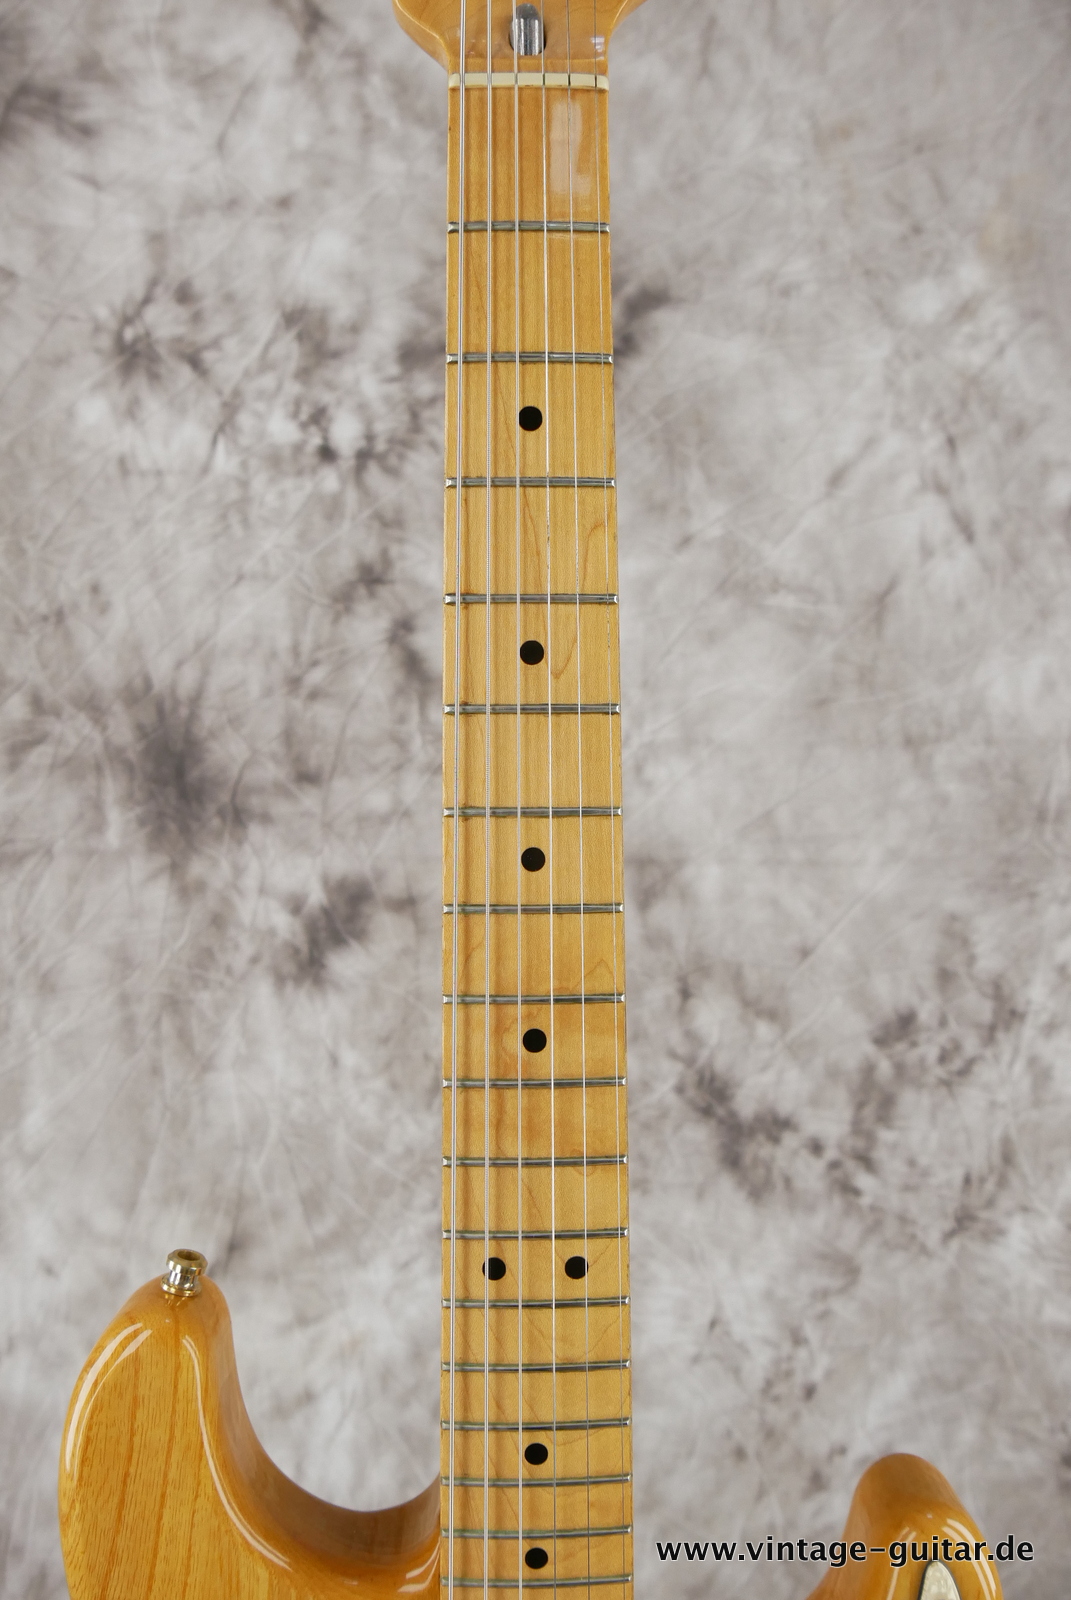 Fender_Stratocaster_70s_reissue_maple_neck_1999_Mexico-011.JPG